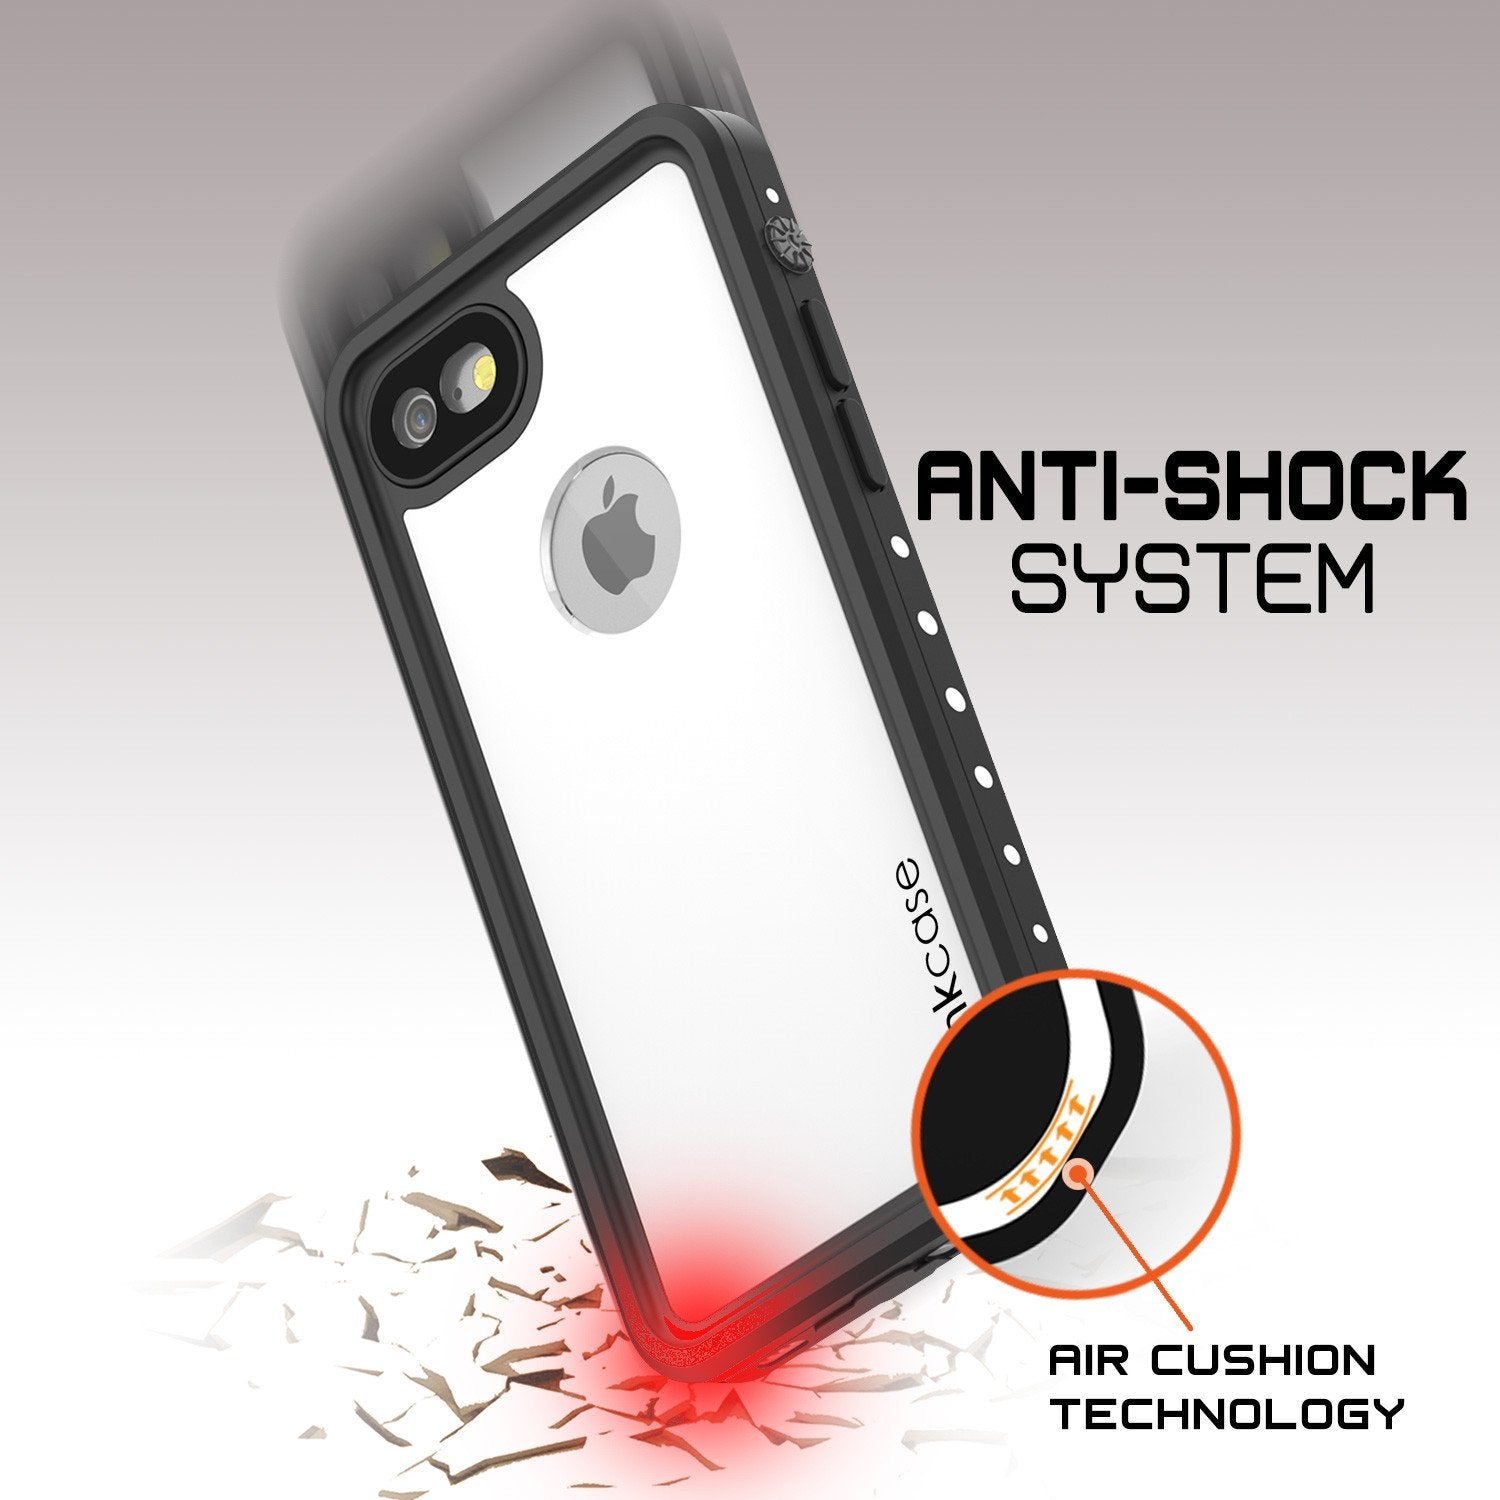 iPhone 7 Waterproof IP68 Case, Punkcase [White] [StudStar Series] [Slim Fit] [Dirtproof] [Snowproof] - PunkCase NZ